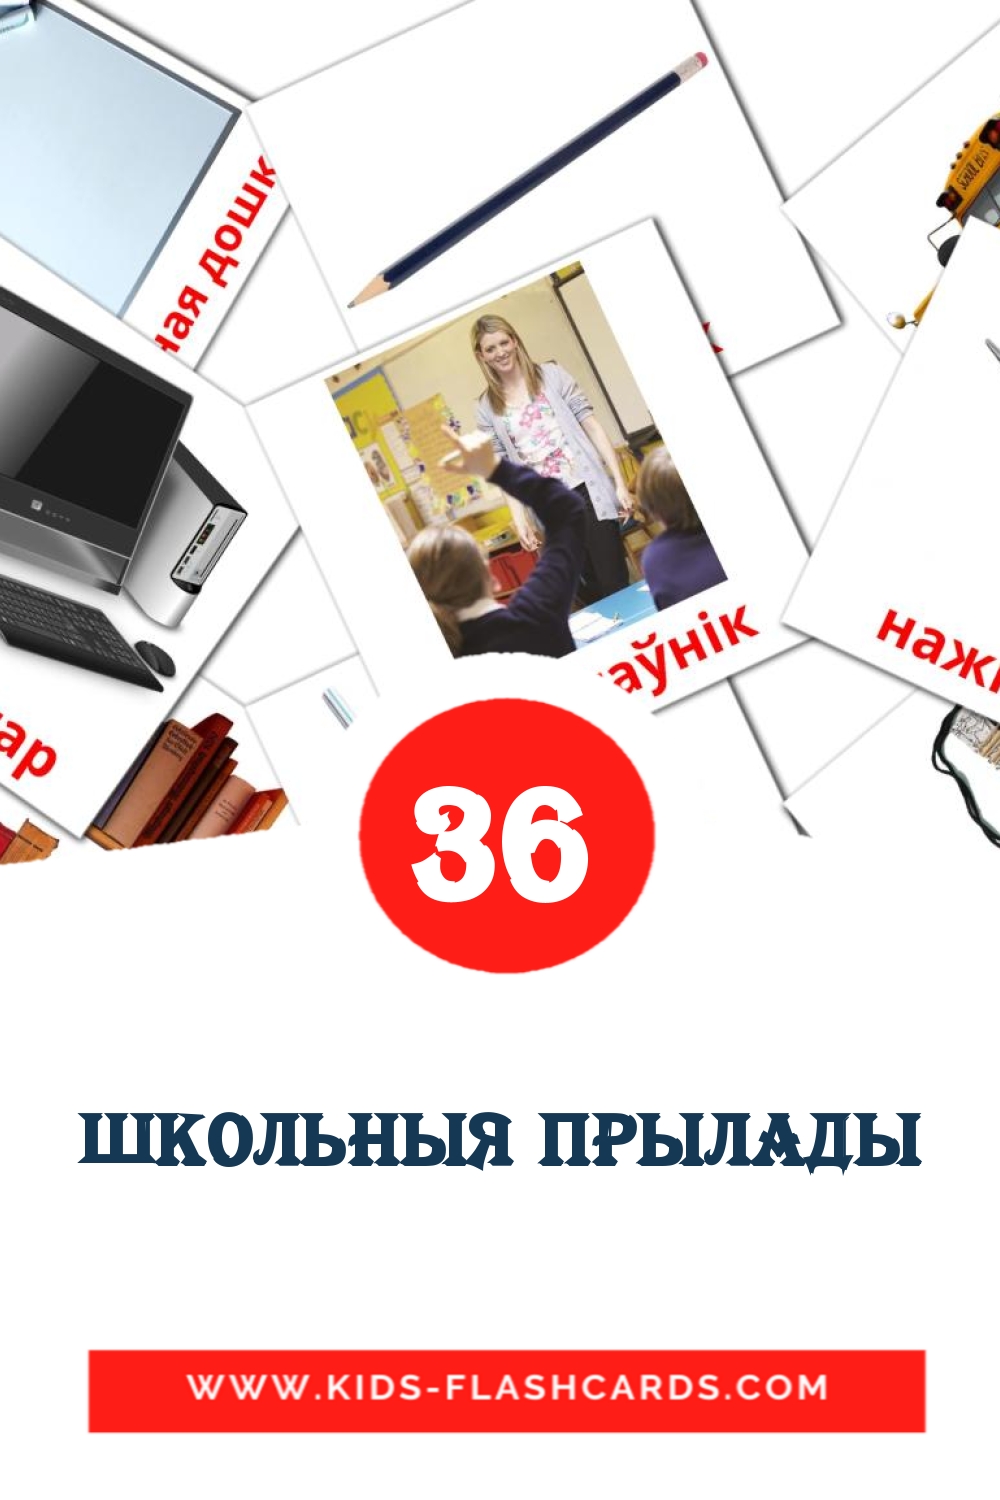 36 школьныя прылады Bildkarten für den Kindergarten auf Weißrussisch